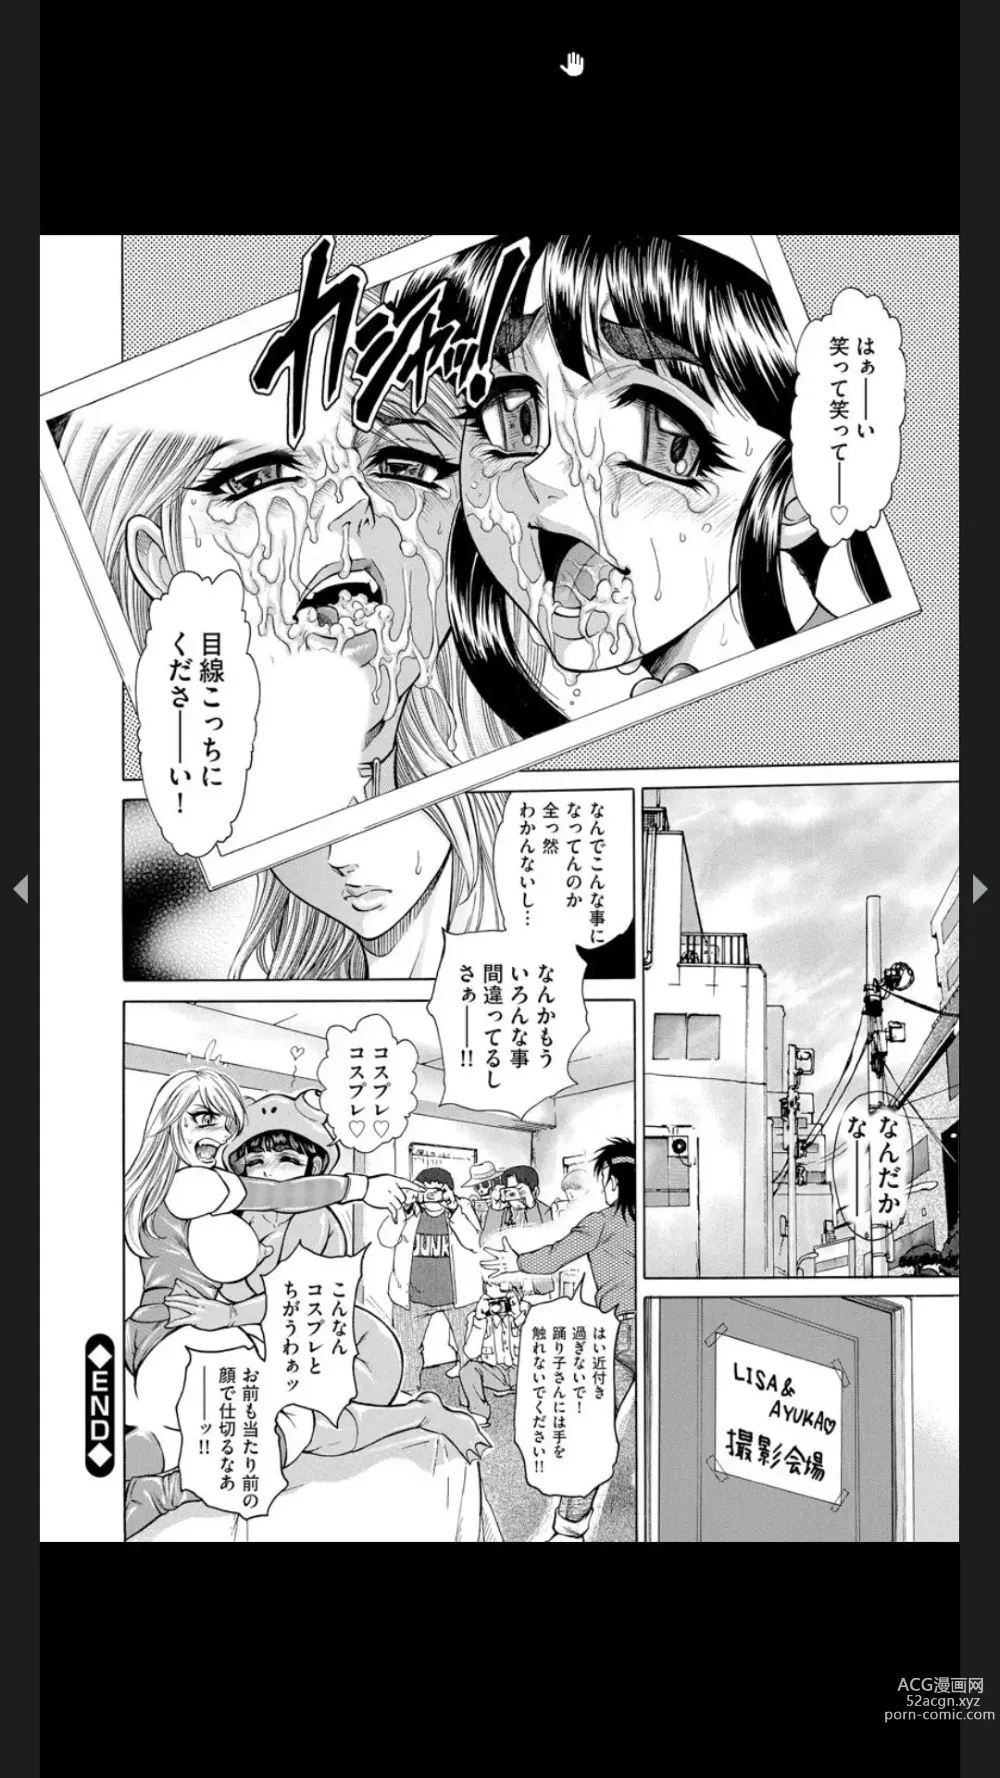 Page 202 of manga Injuku Meniku Mugobatsu